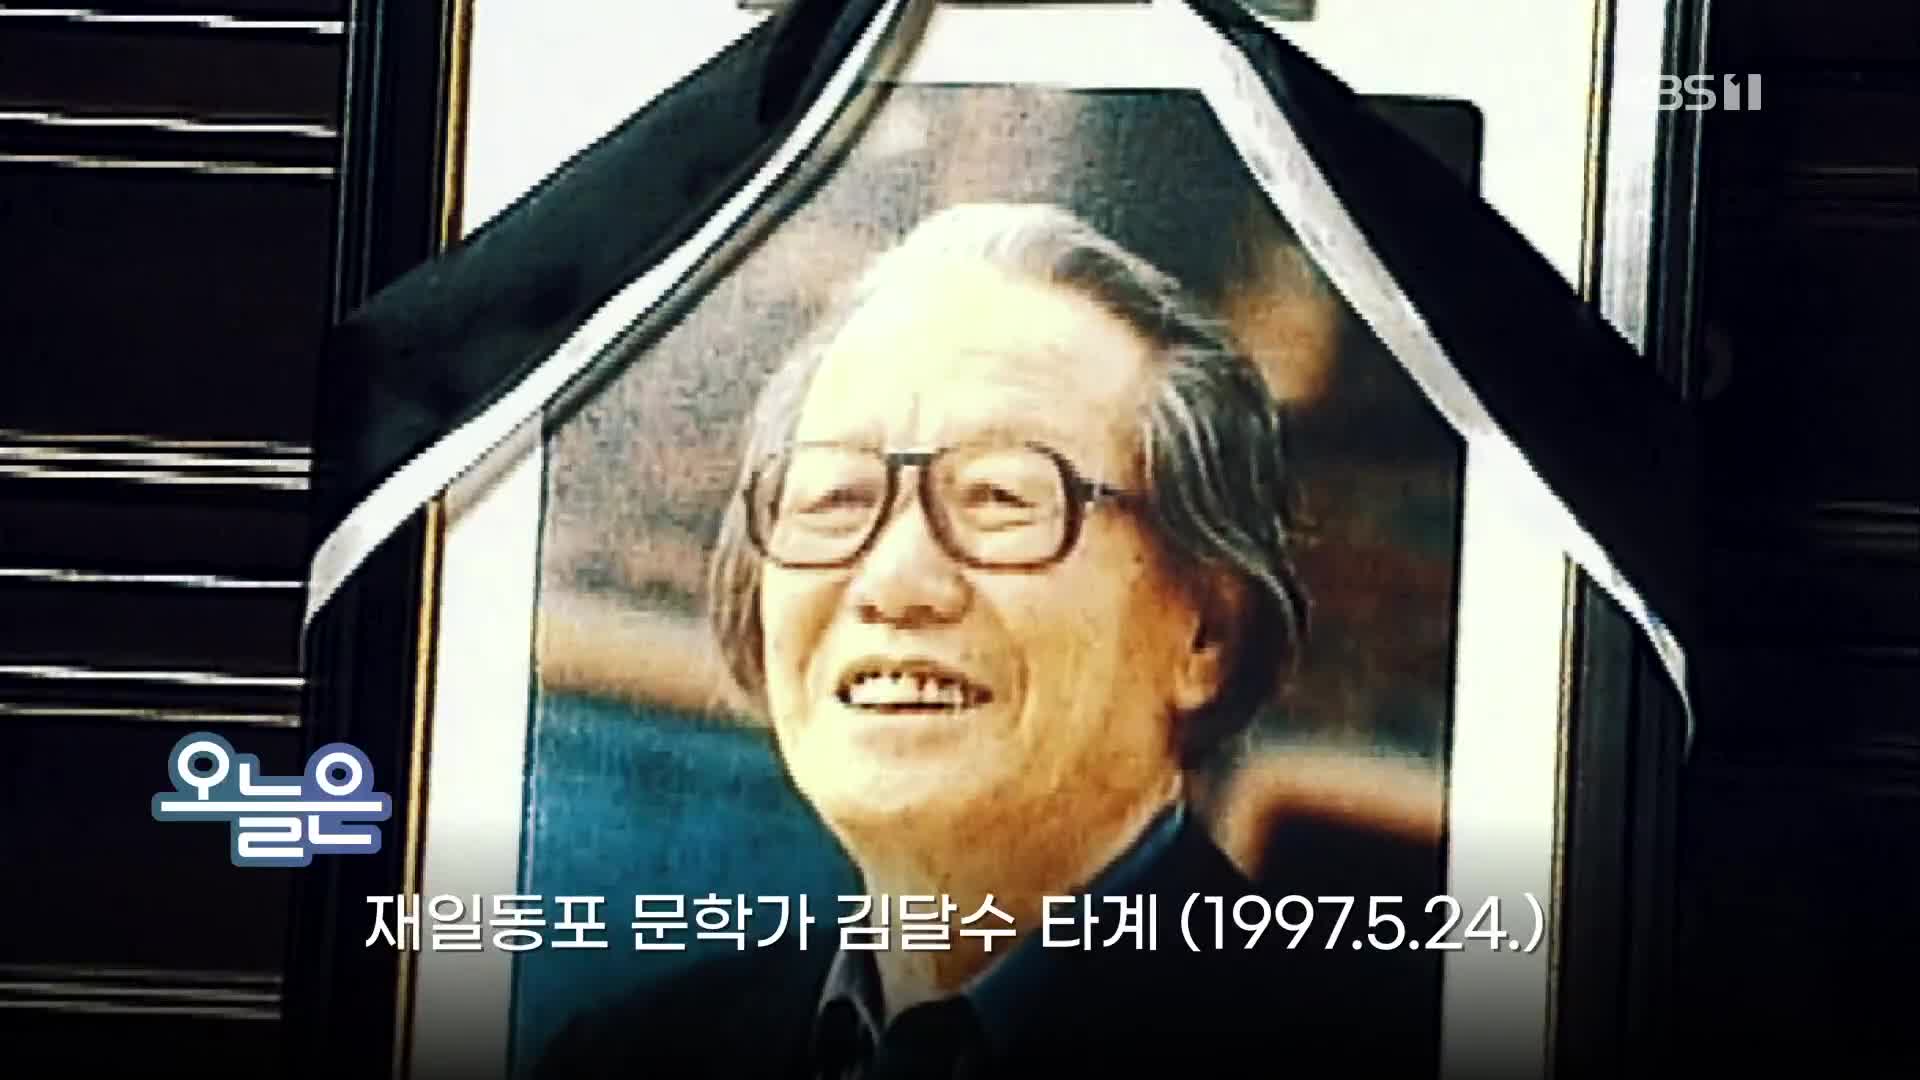 [오늘은] 재일동포 문학가 김달수 타계 (1997.5.24.)